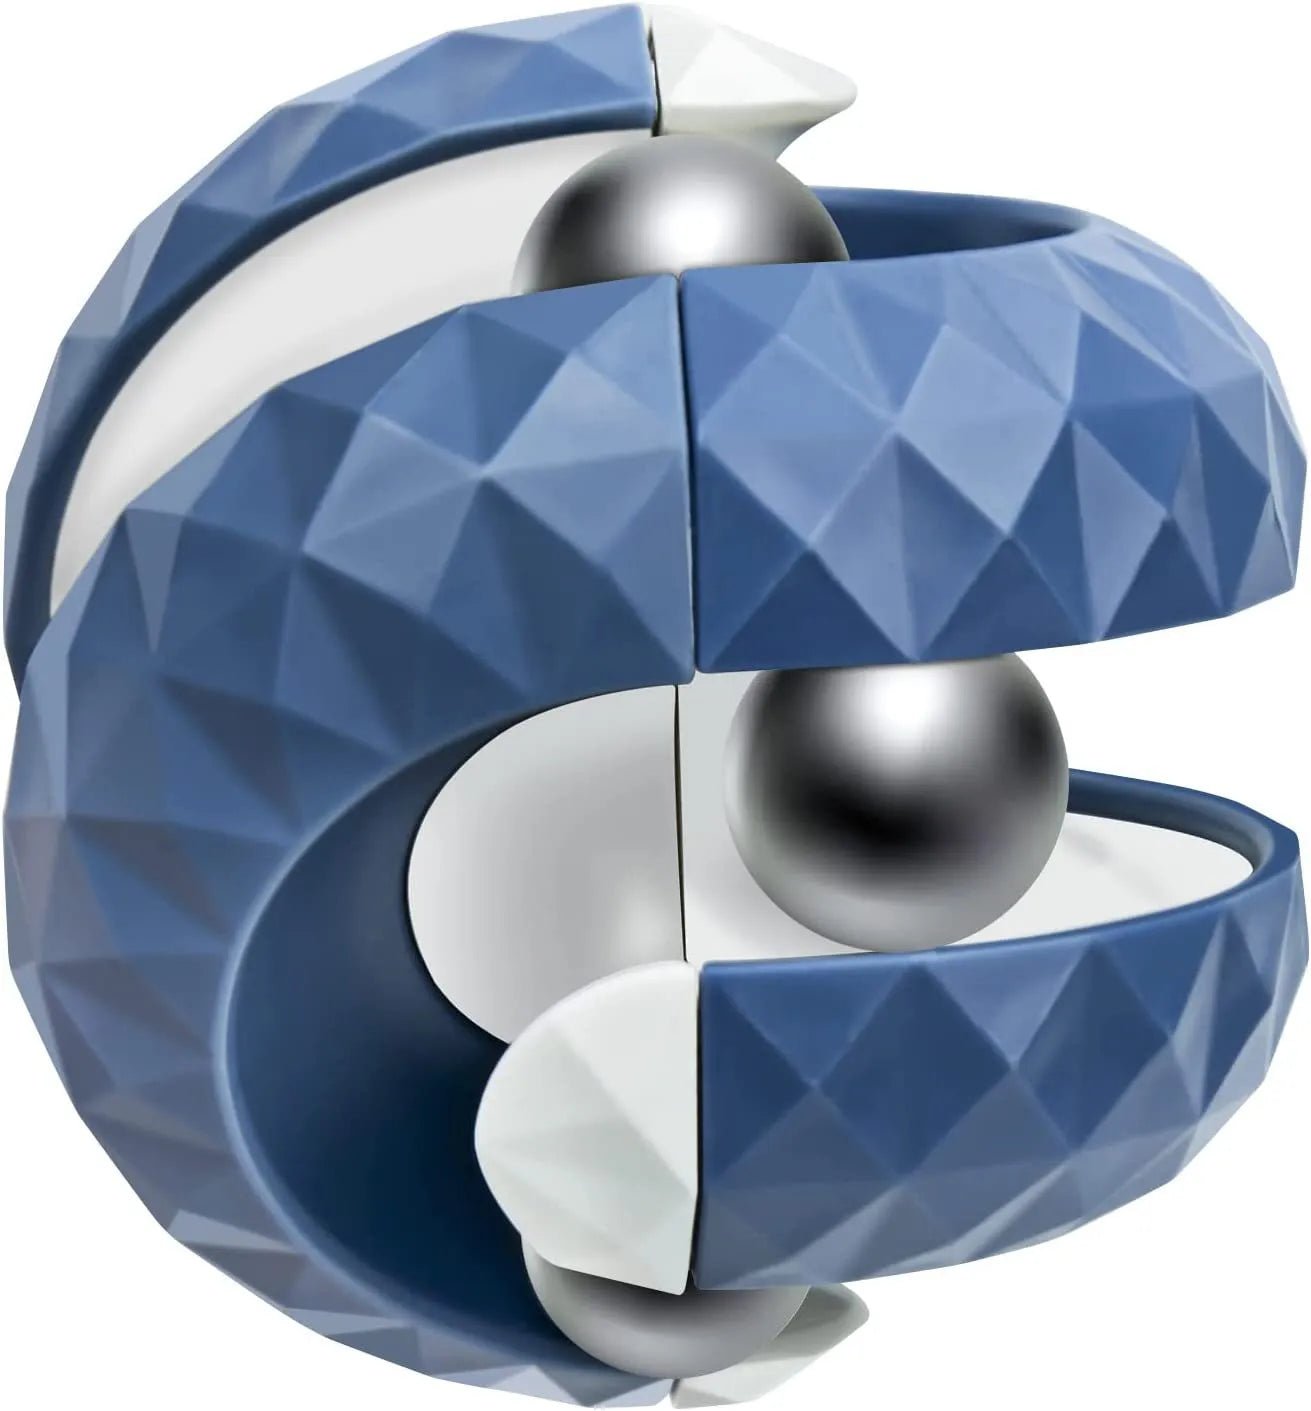 Orbit Ball Fidget Toy - getallfun